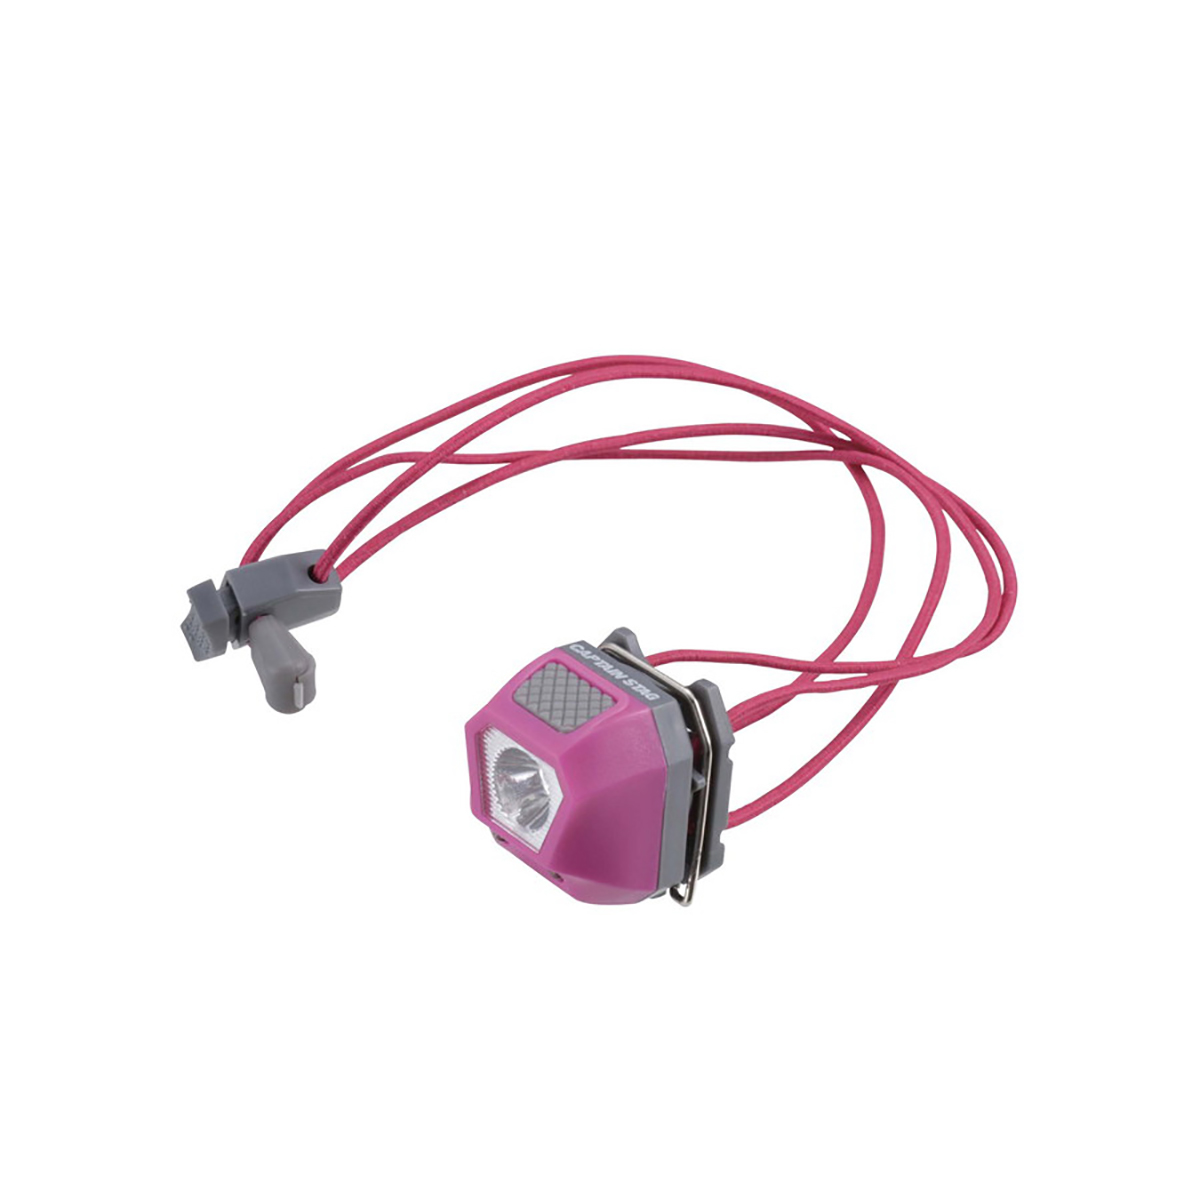 ミニデコ LEDヘッドクリップライト(ピンク) - アウトドア・キャンプ用品 - キャプテンスタッグ